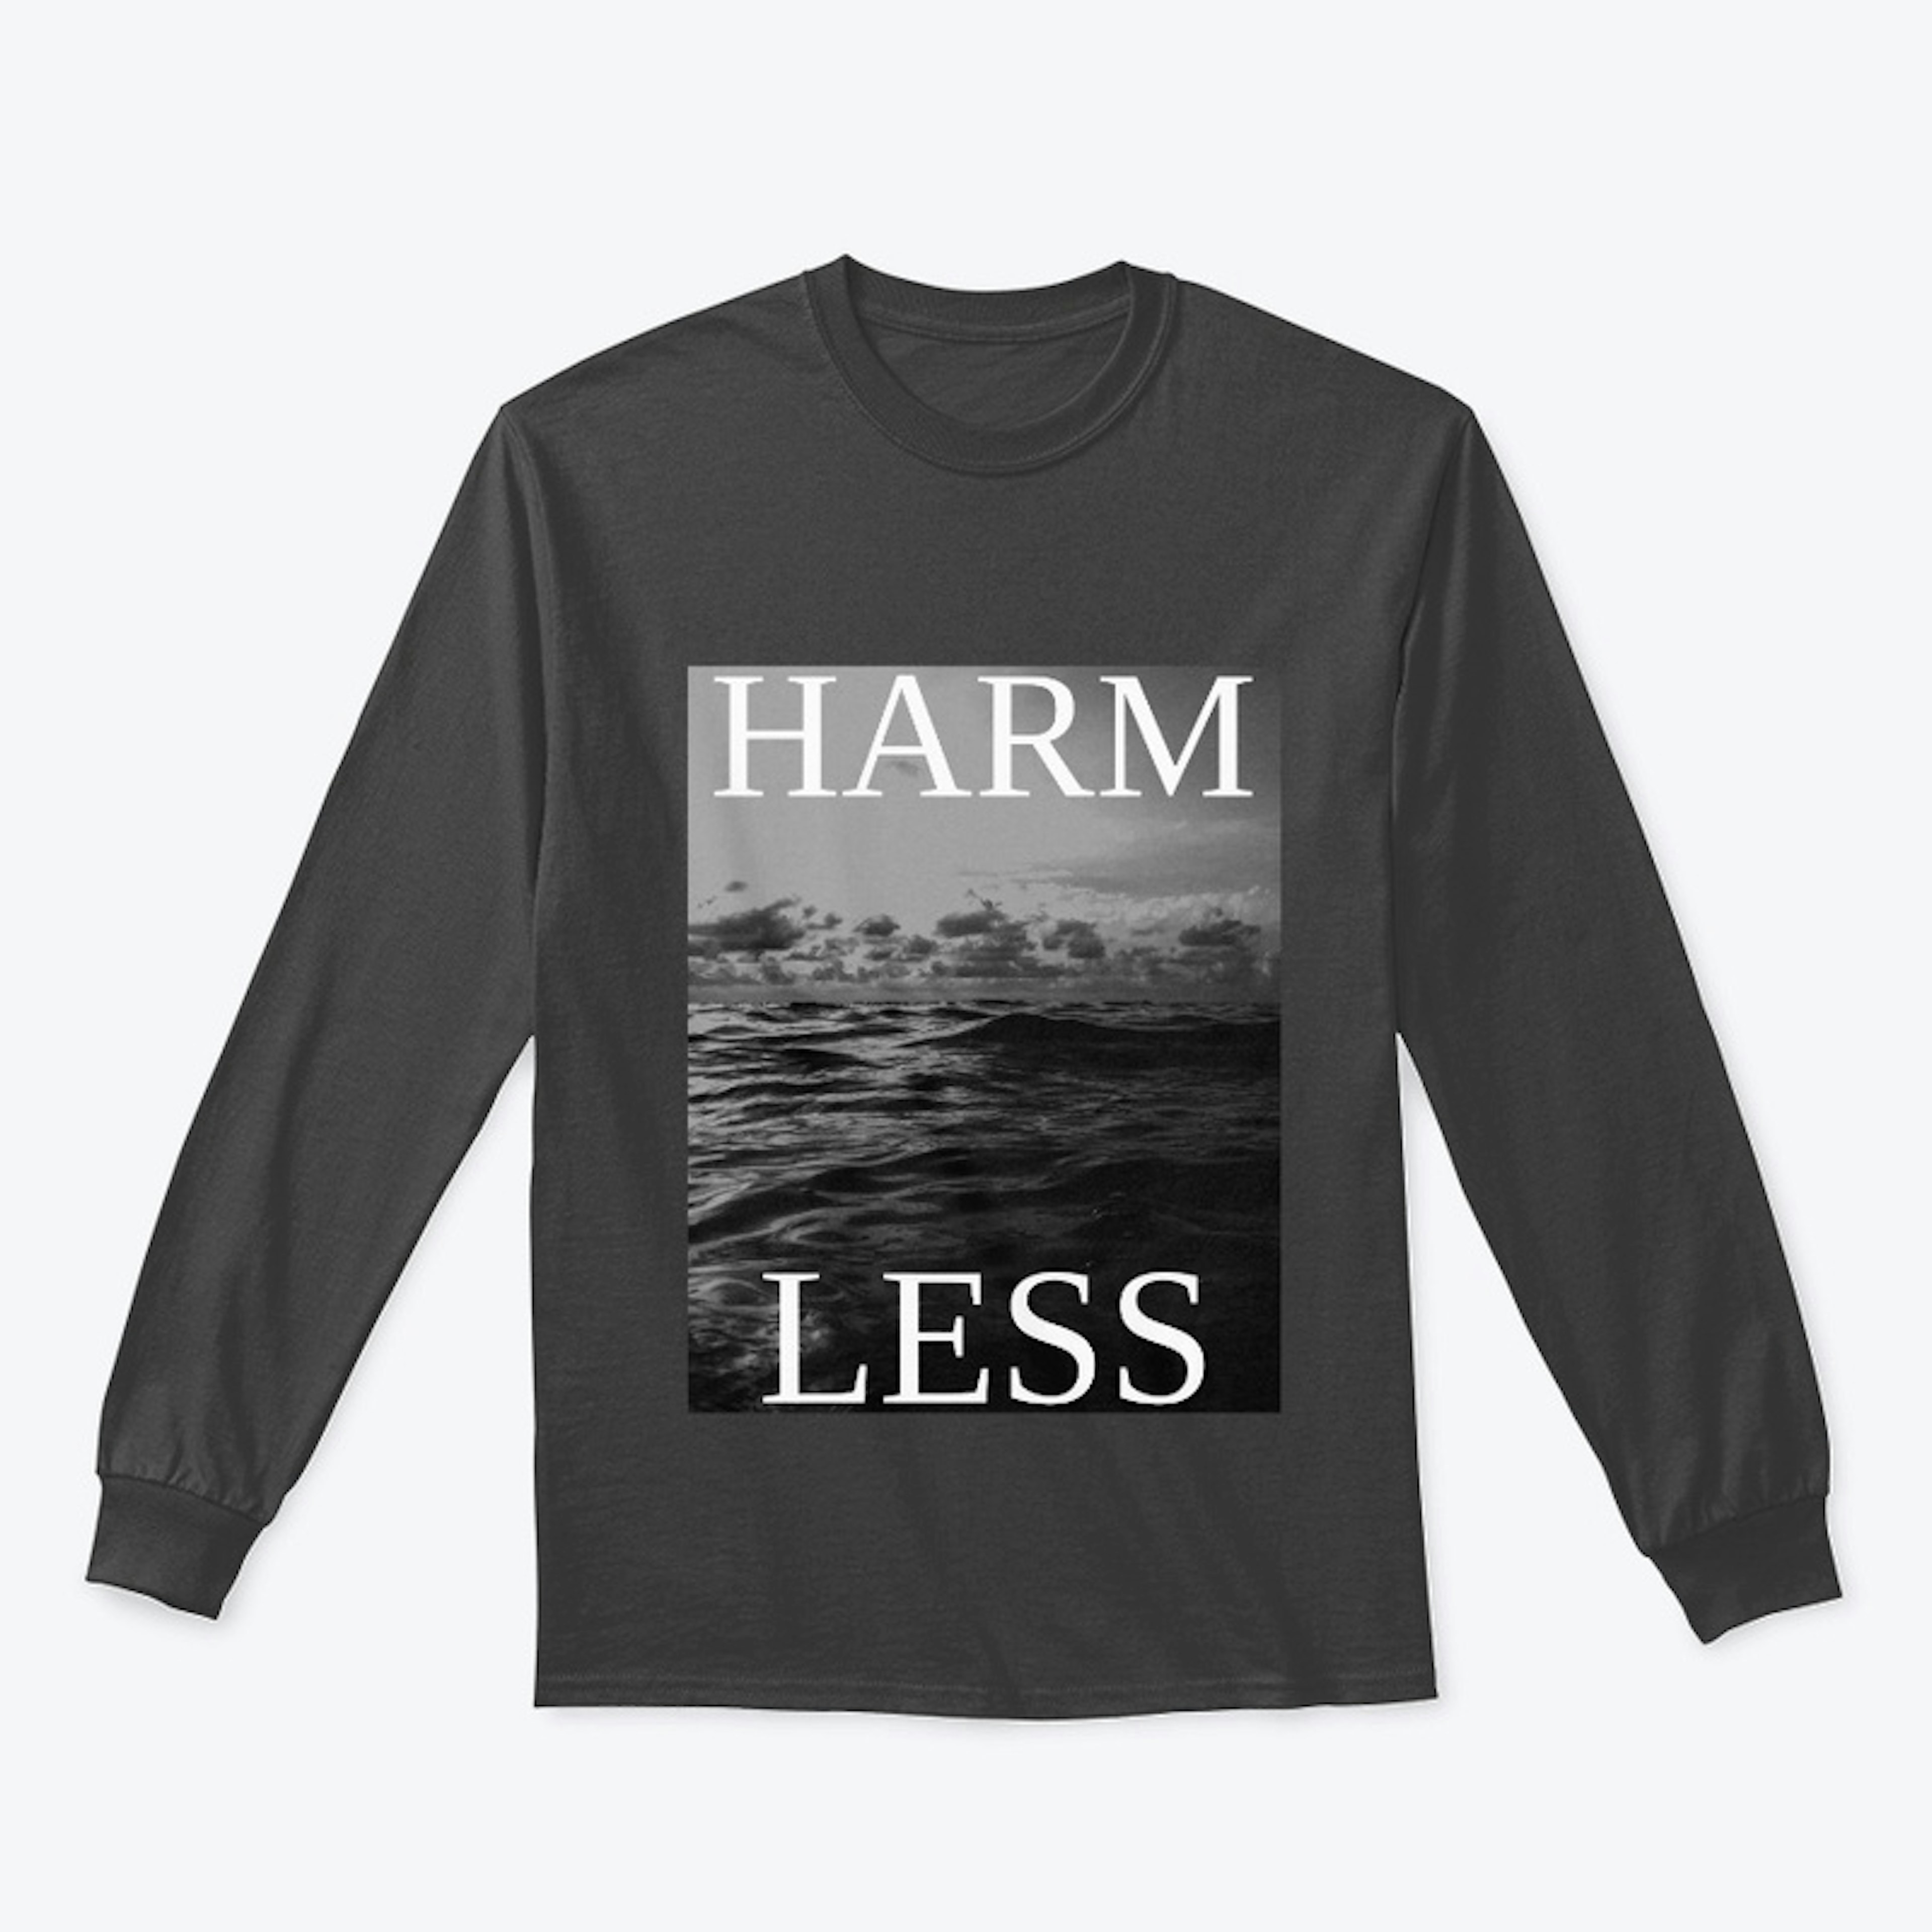 Harm Less (Harmless)